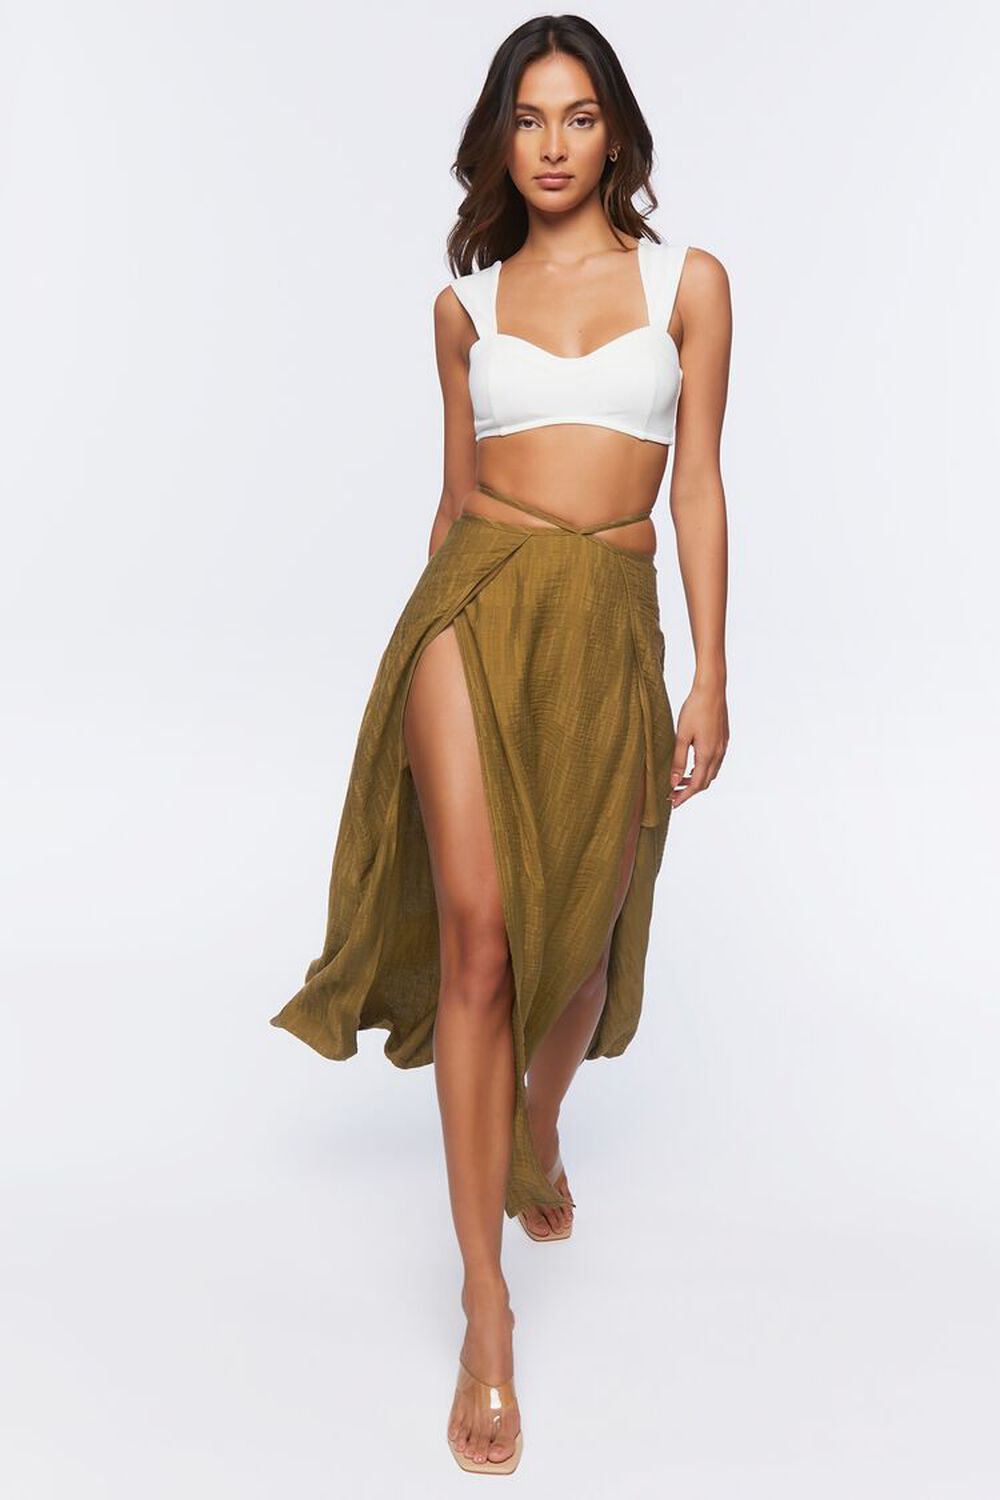 BEECH Jacquard Wrap Maxi Skirt, image 1